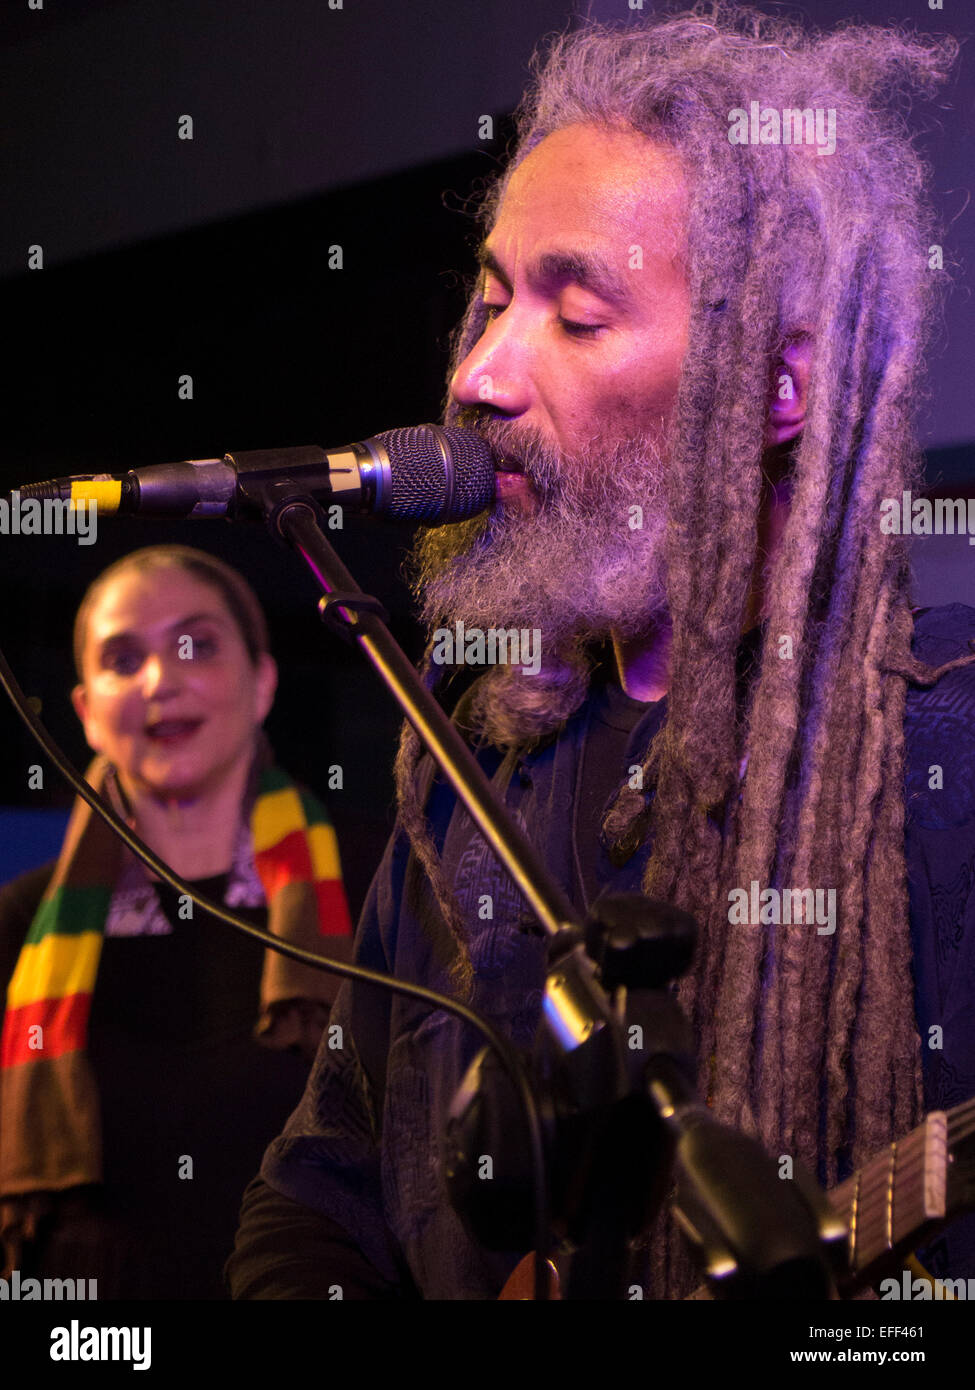 Musicien reggae afro-américains de race blanche chante avec son épouse dans leur family band ReBelle, Northampton, MA, New Years Eve 2015 Banque D'Images